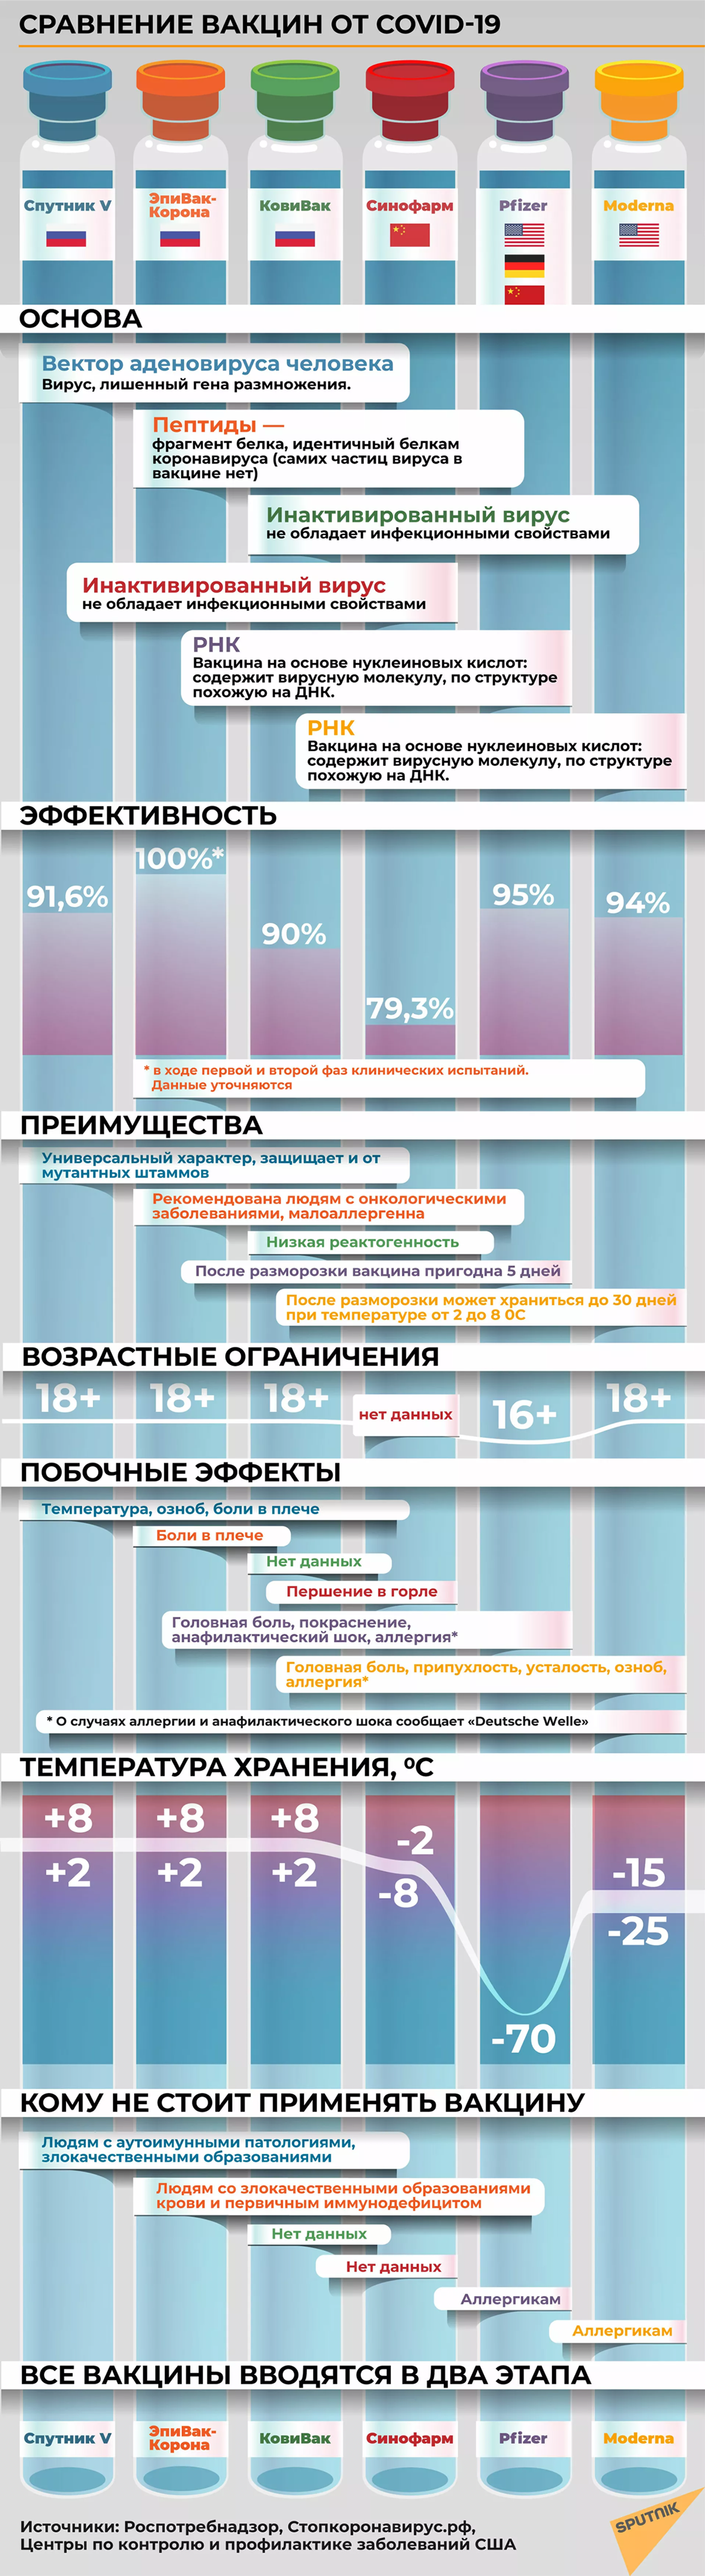 Сравнение основных характеристик вакцин в инфографике - Sputnik Кыргызстан, 1920, 31.03.2021